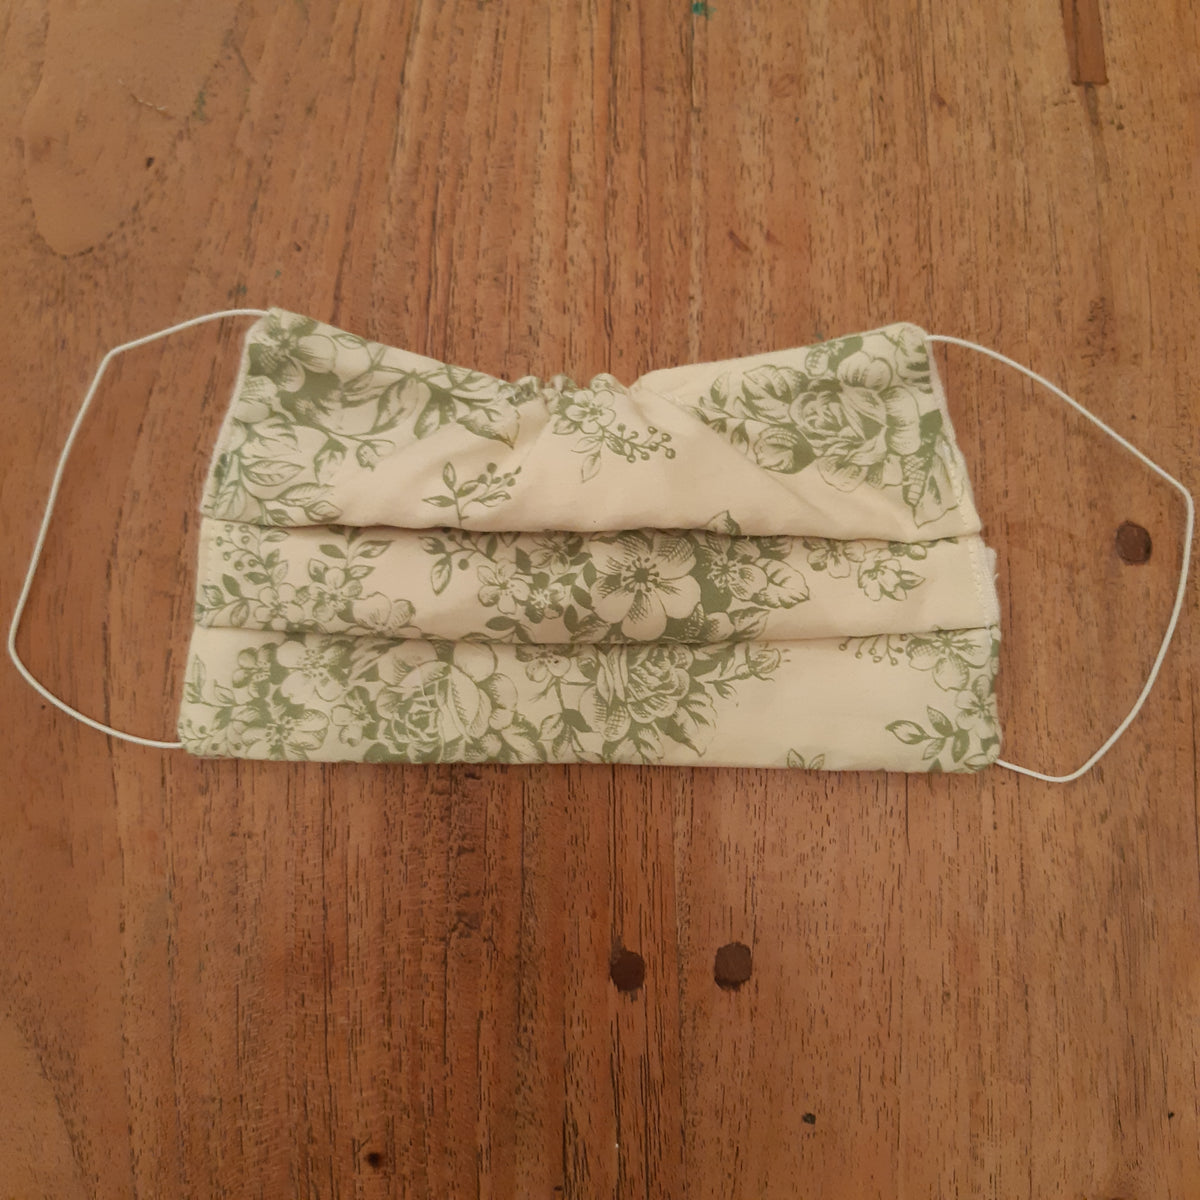 masque protection coton elastique 2 plis fabrication artisanale france fleurs verts